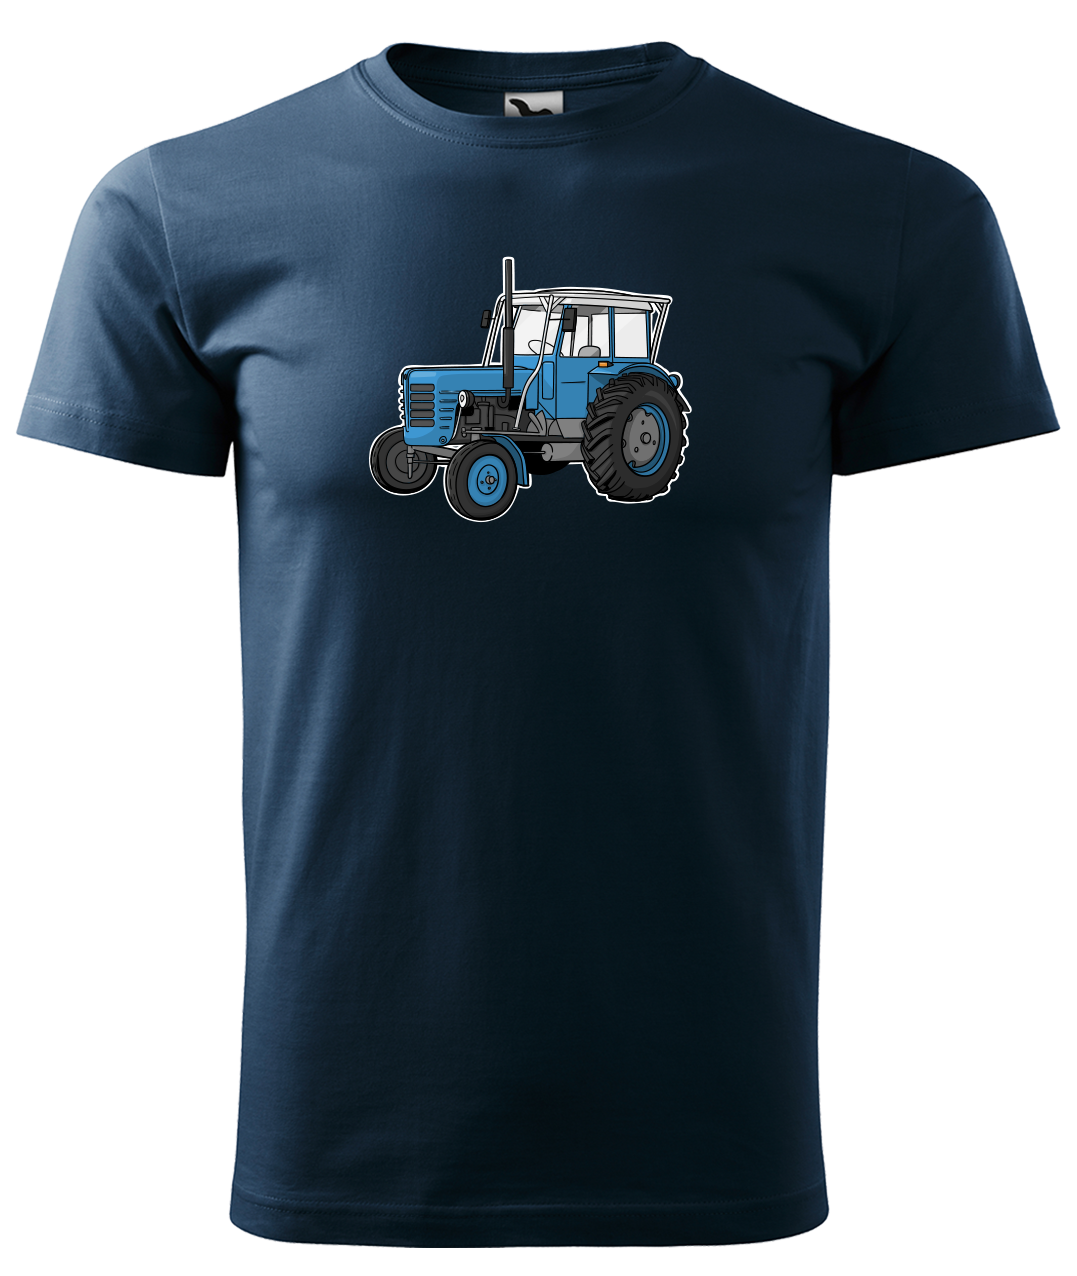 Dětské tričko s traktorem - Starý traktor Velikost: 4 roky / 110 cm, Barva: Námořní modrá (02)